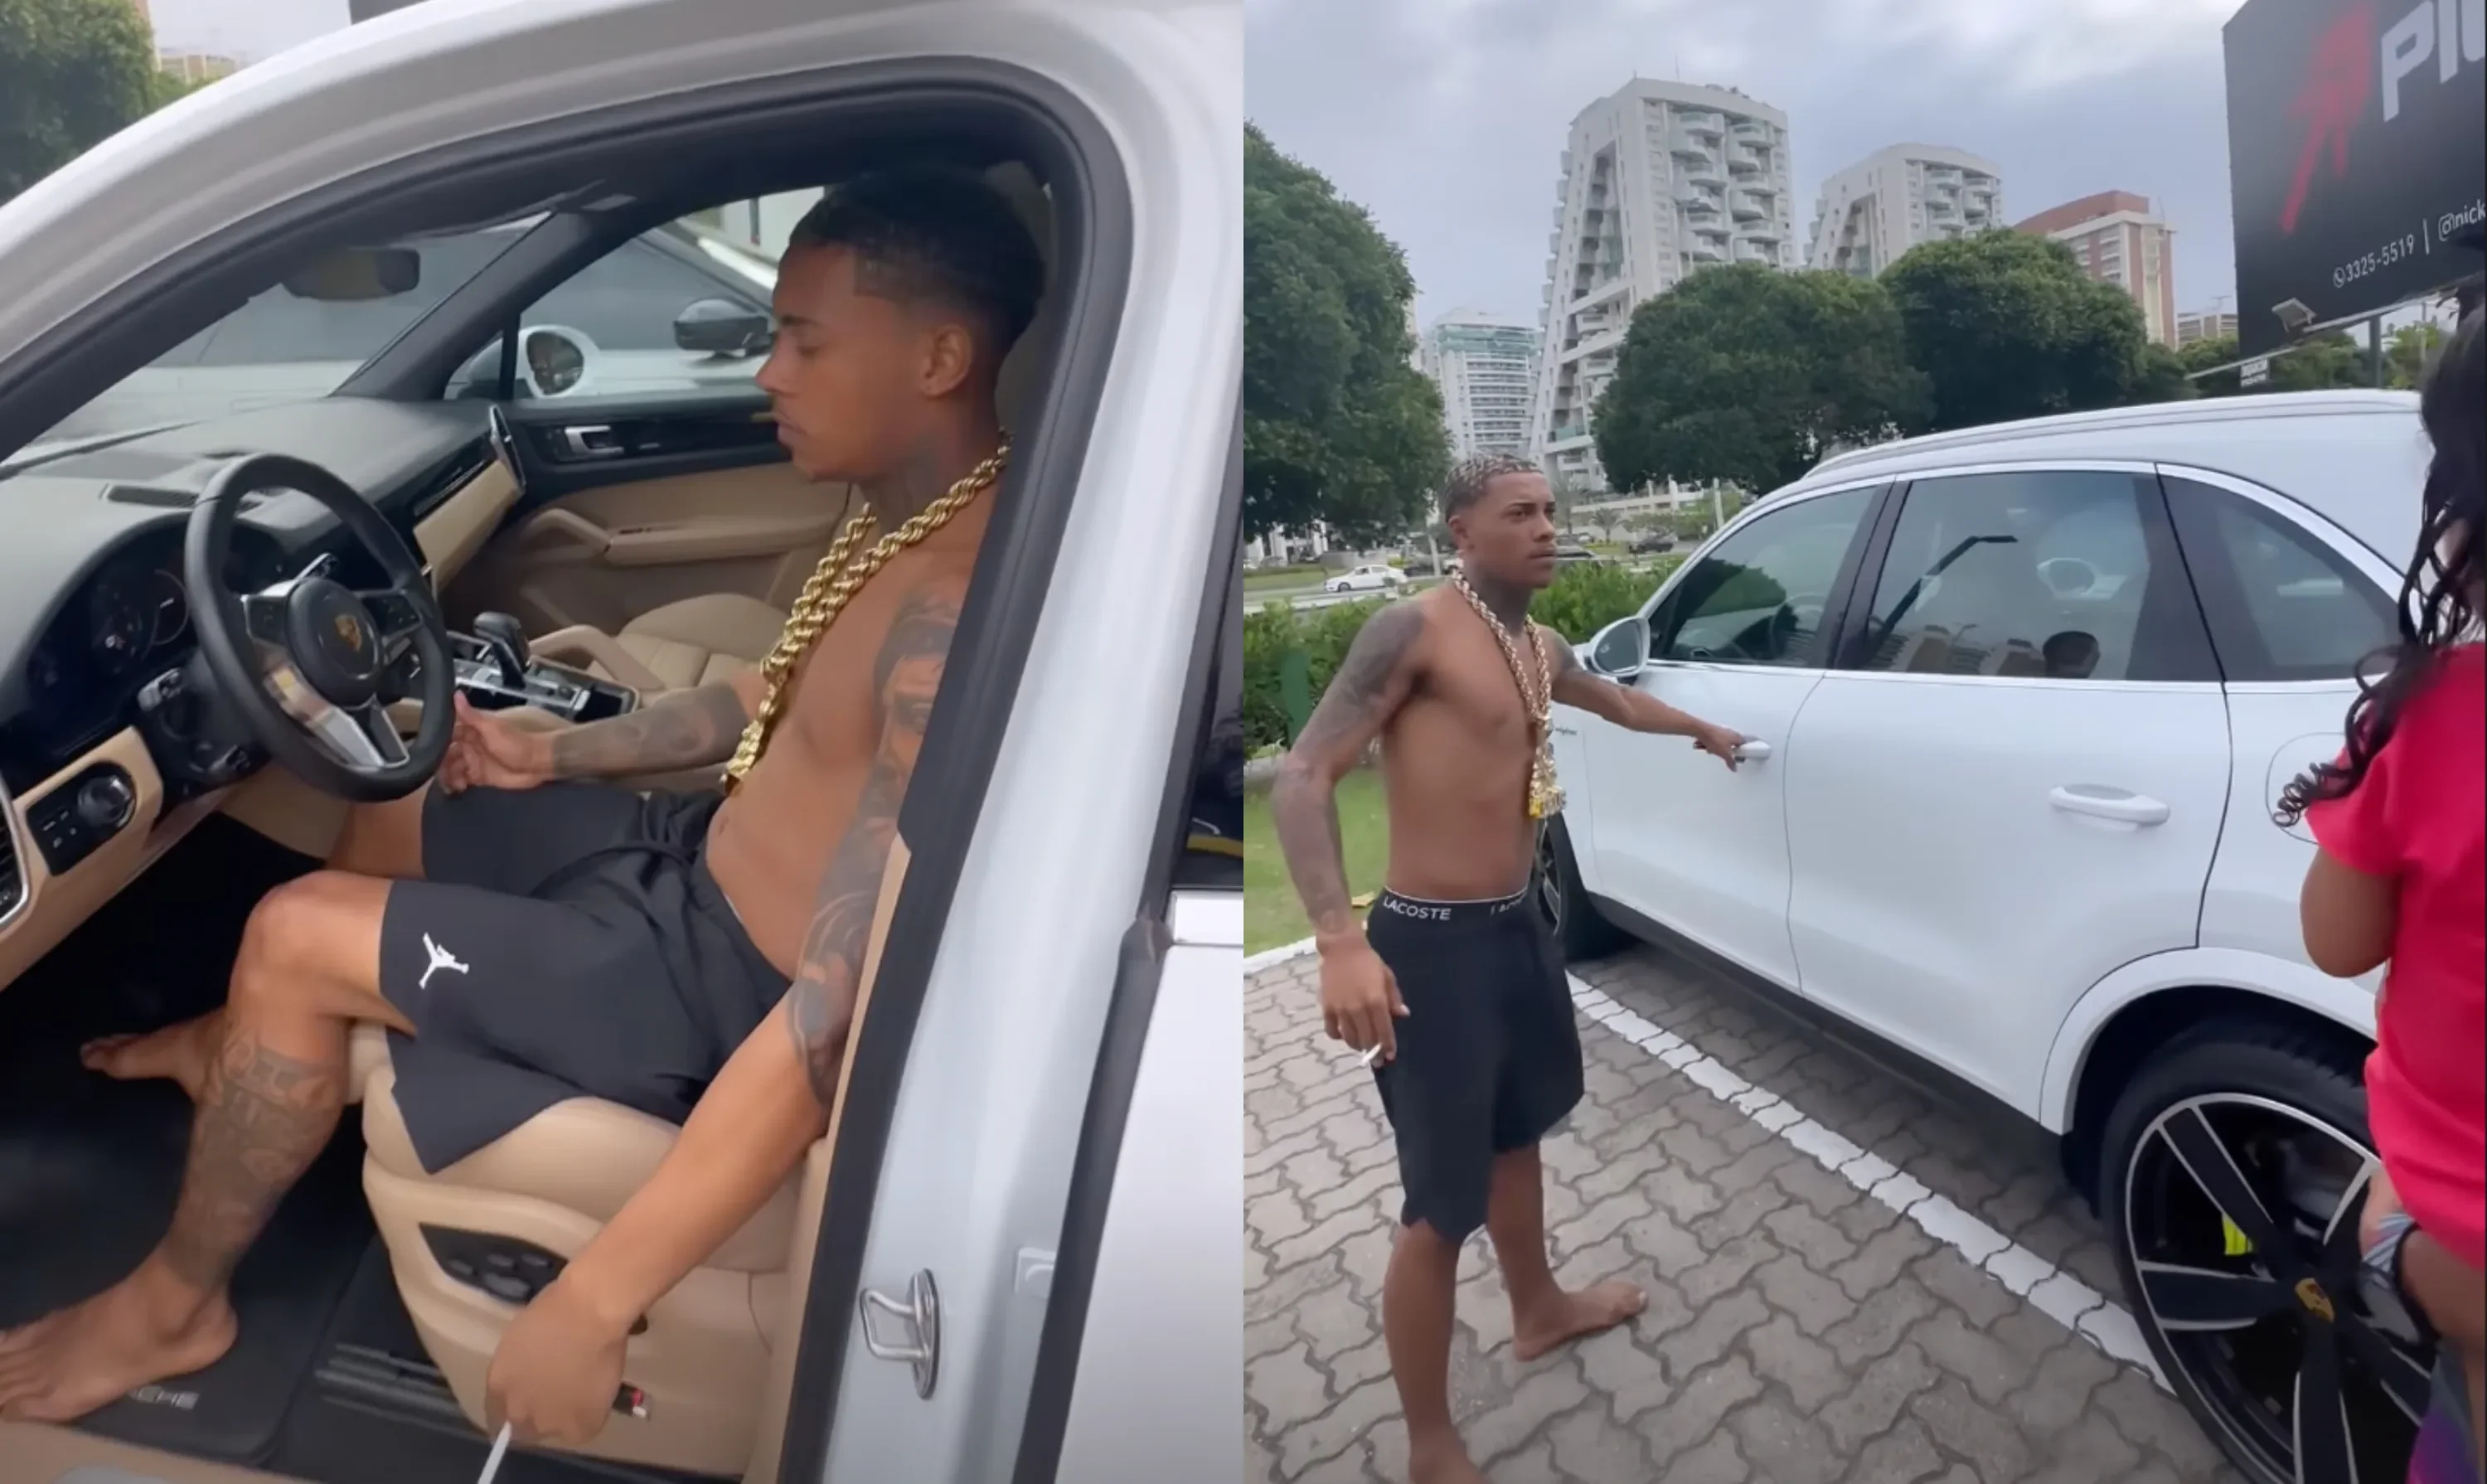 MC Poze do Rodo responde críticas após comprar carro de R$ 1,1 milhão descalço